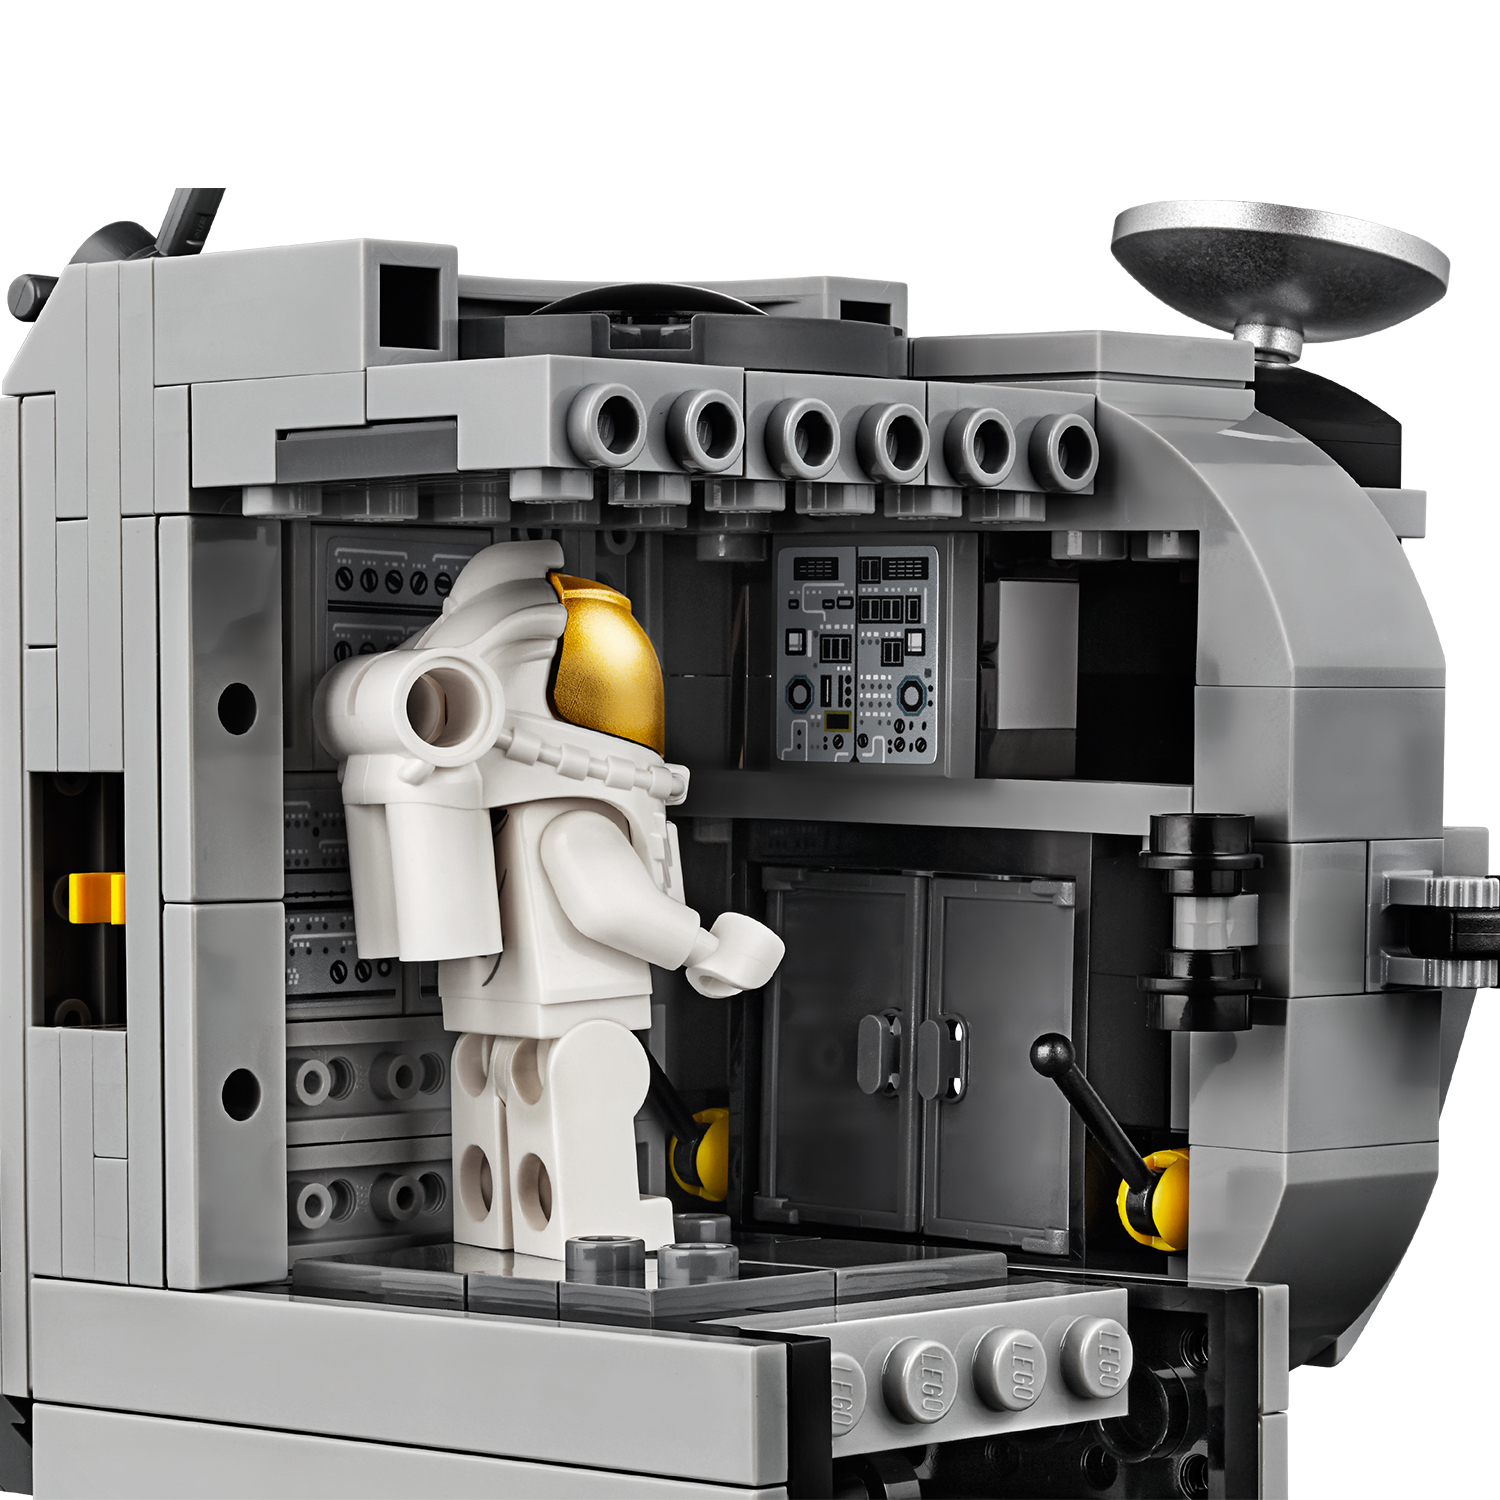 LEGO Creator Expert NASA Apollo 11 Lunar Lander [10266]